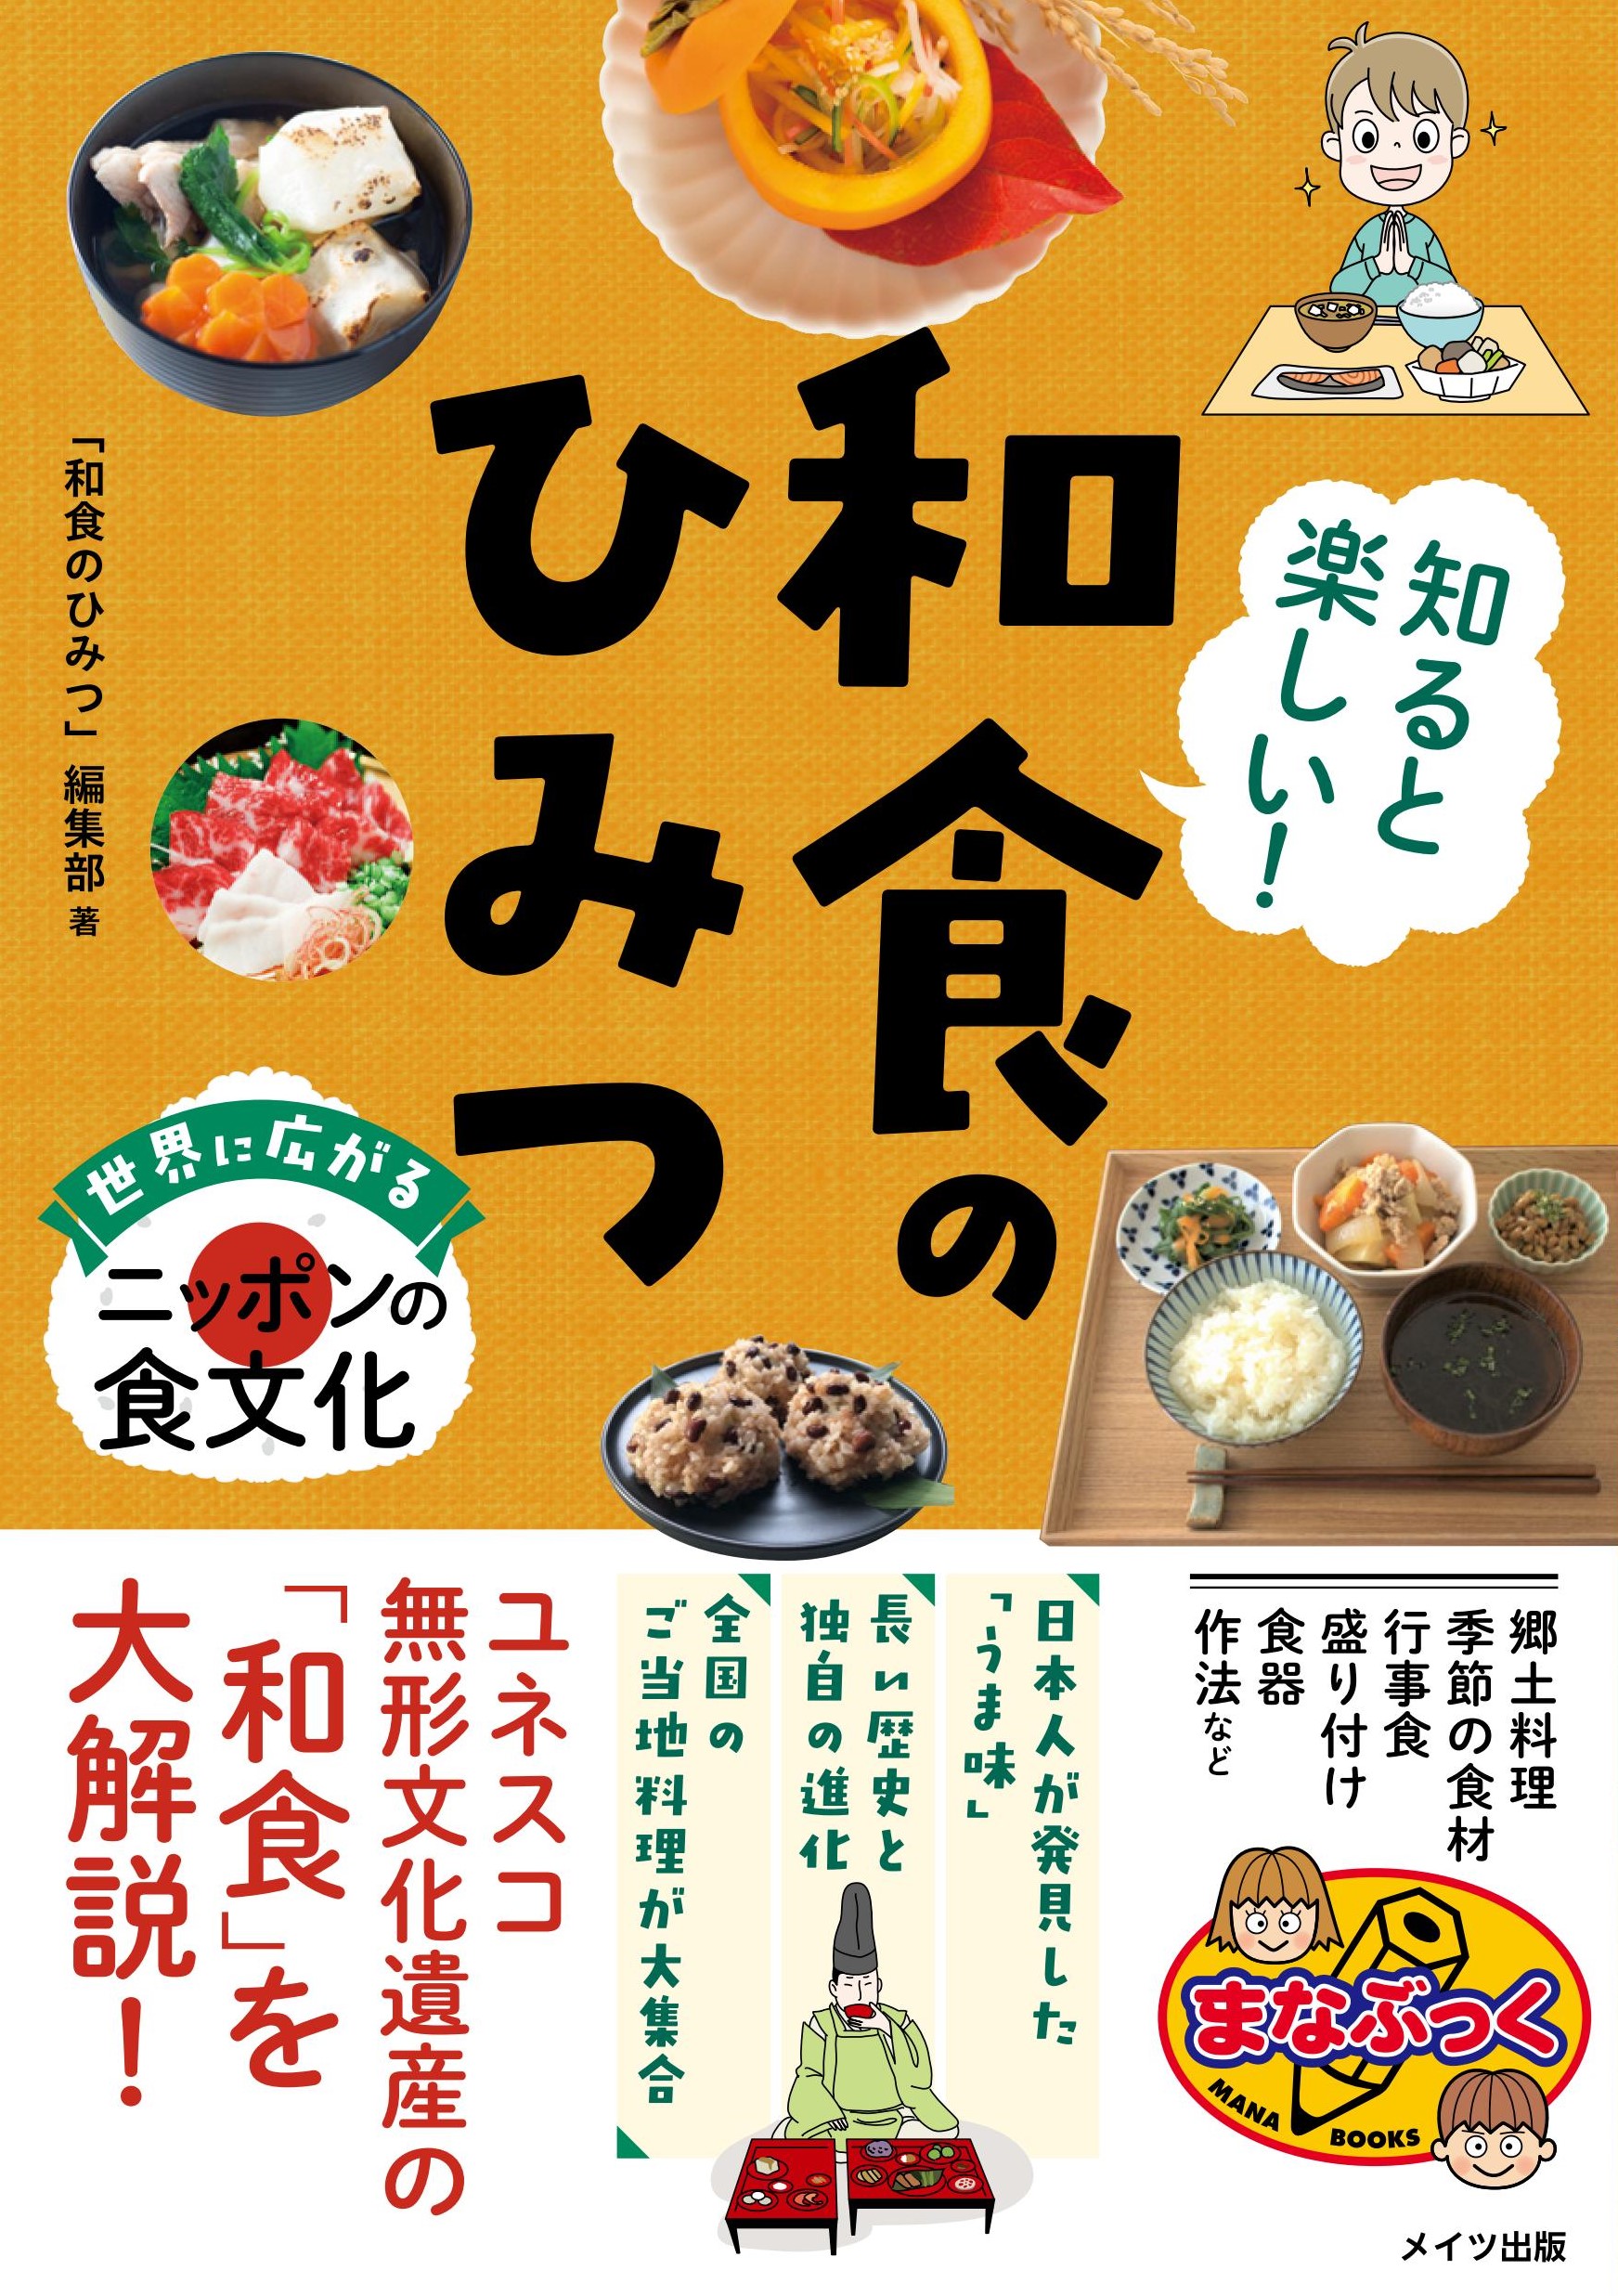 知ると楽しい! 和食のひみつ 世界に広がるニッポンの食文化の商品画像